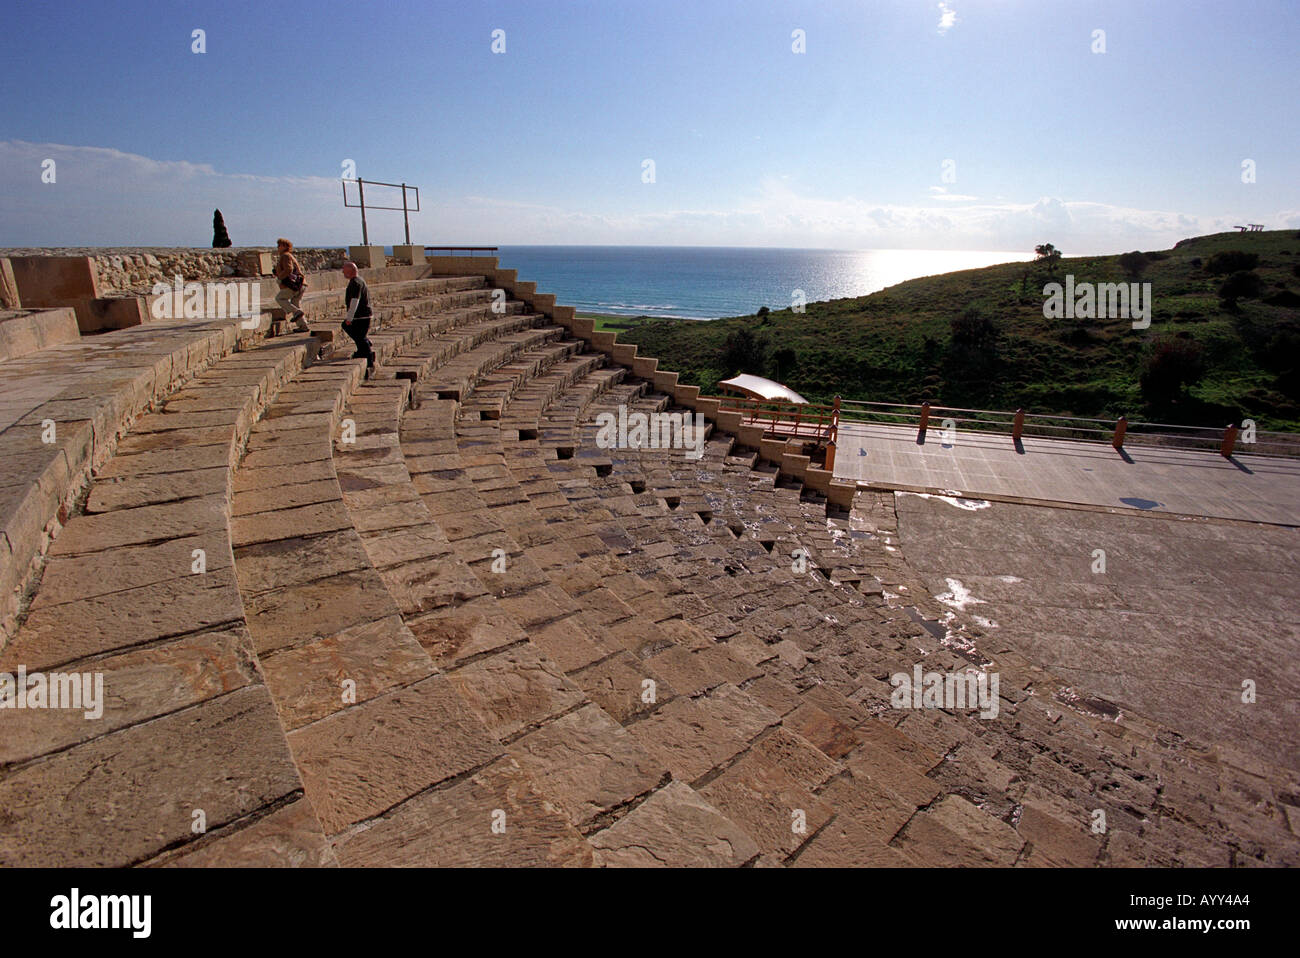 Gréco Kourion théâtre romain à Chypre Banque D'Images